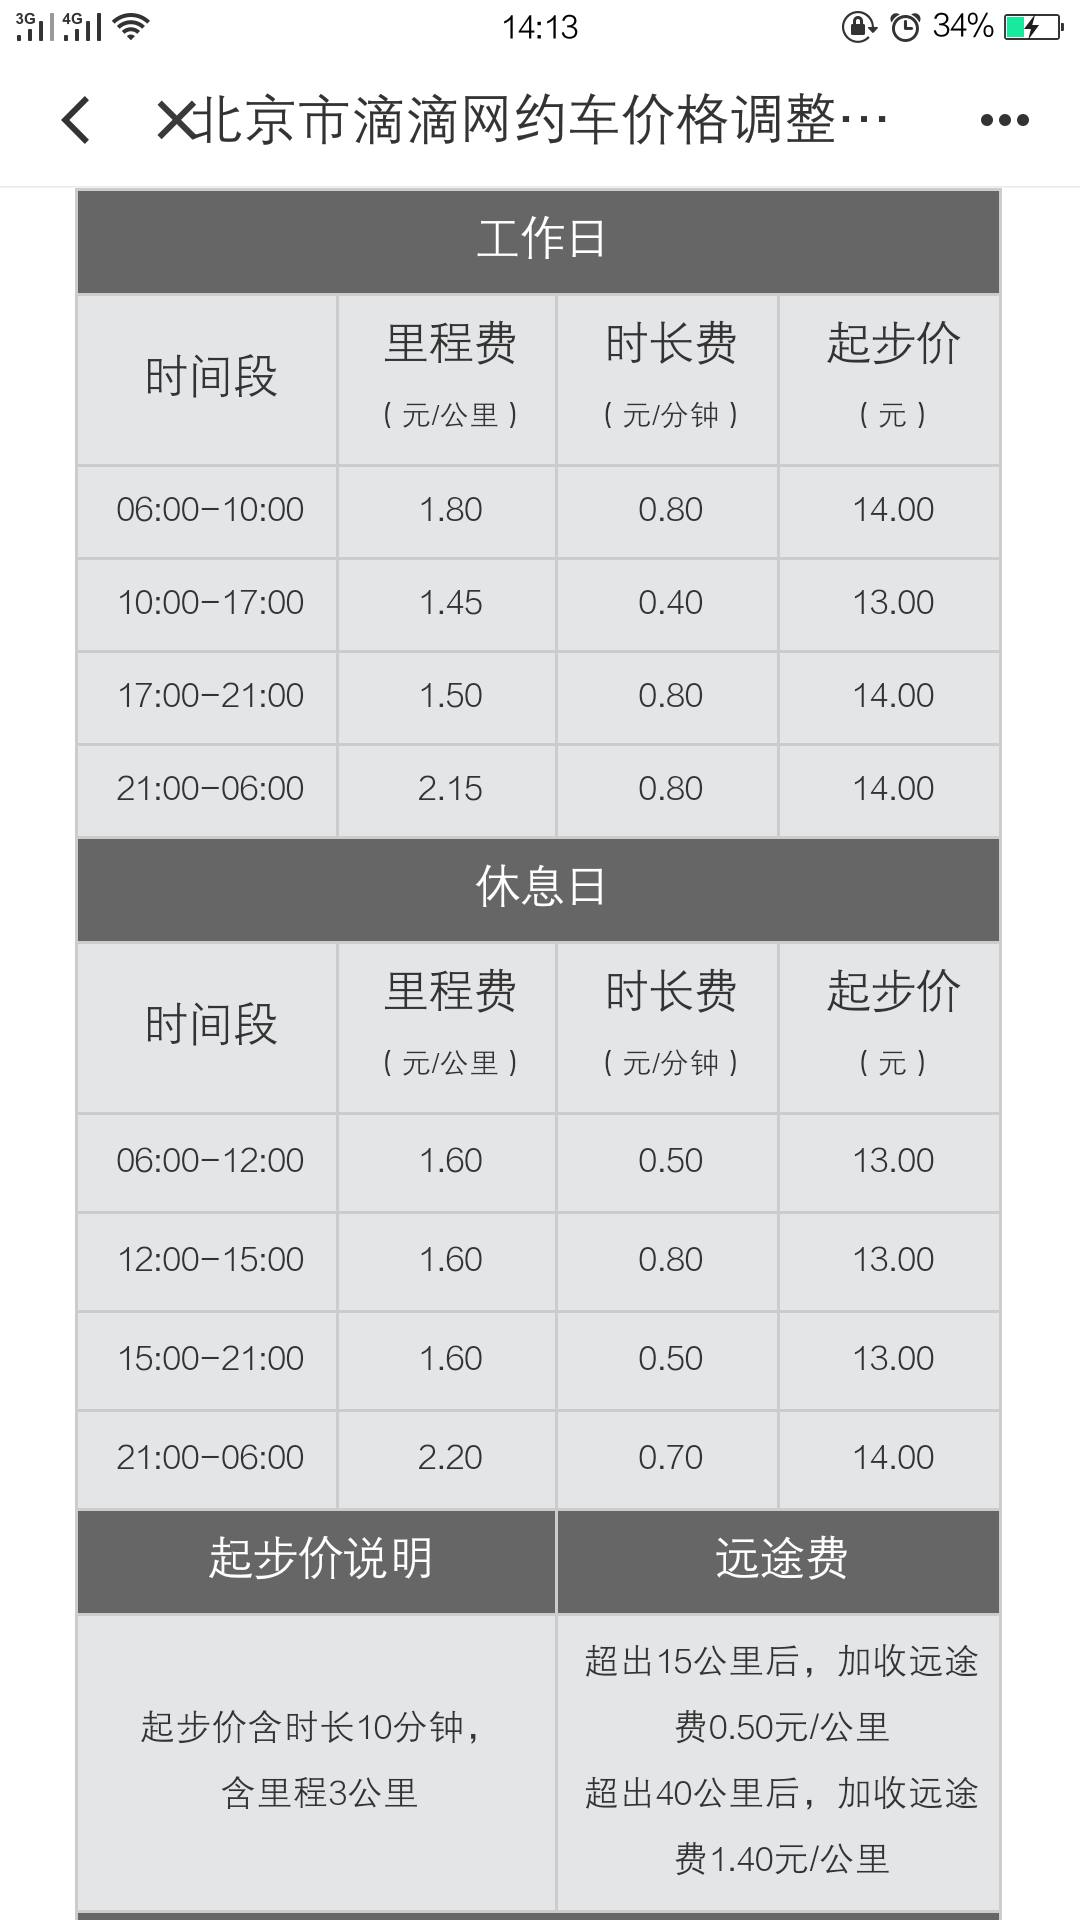 北京市部分区域快车价格调整说明 截图来源：滴滴出行APP